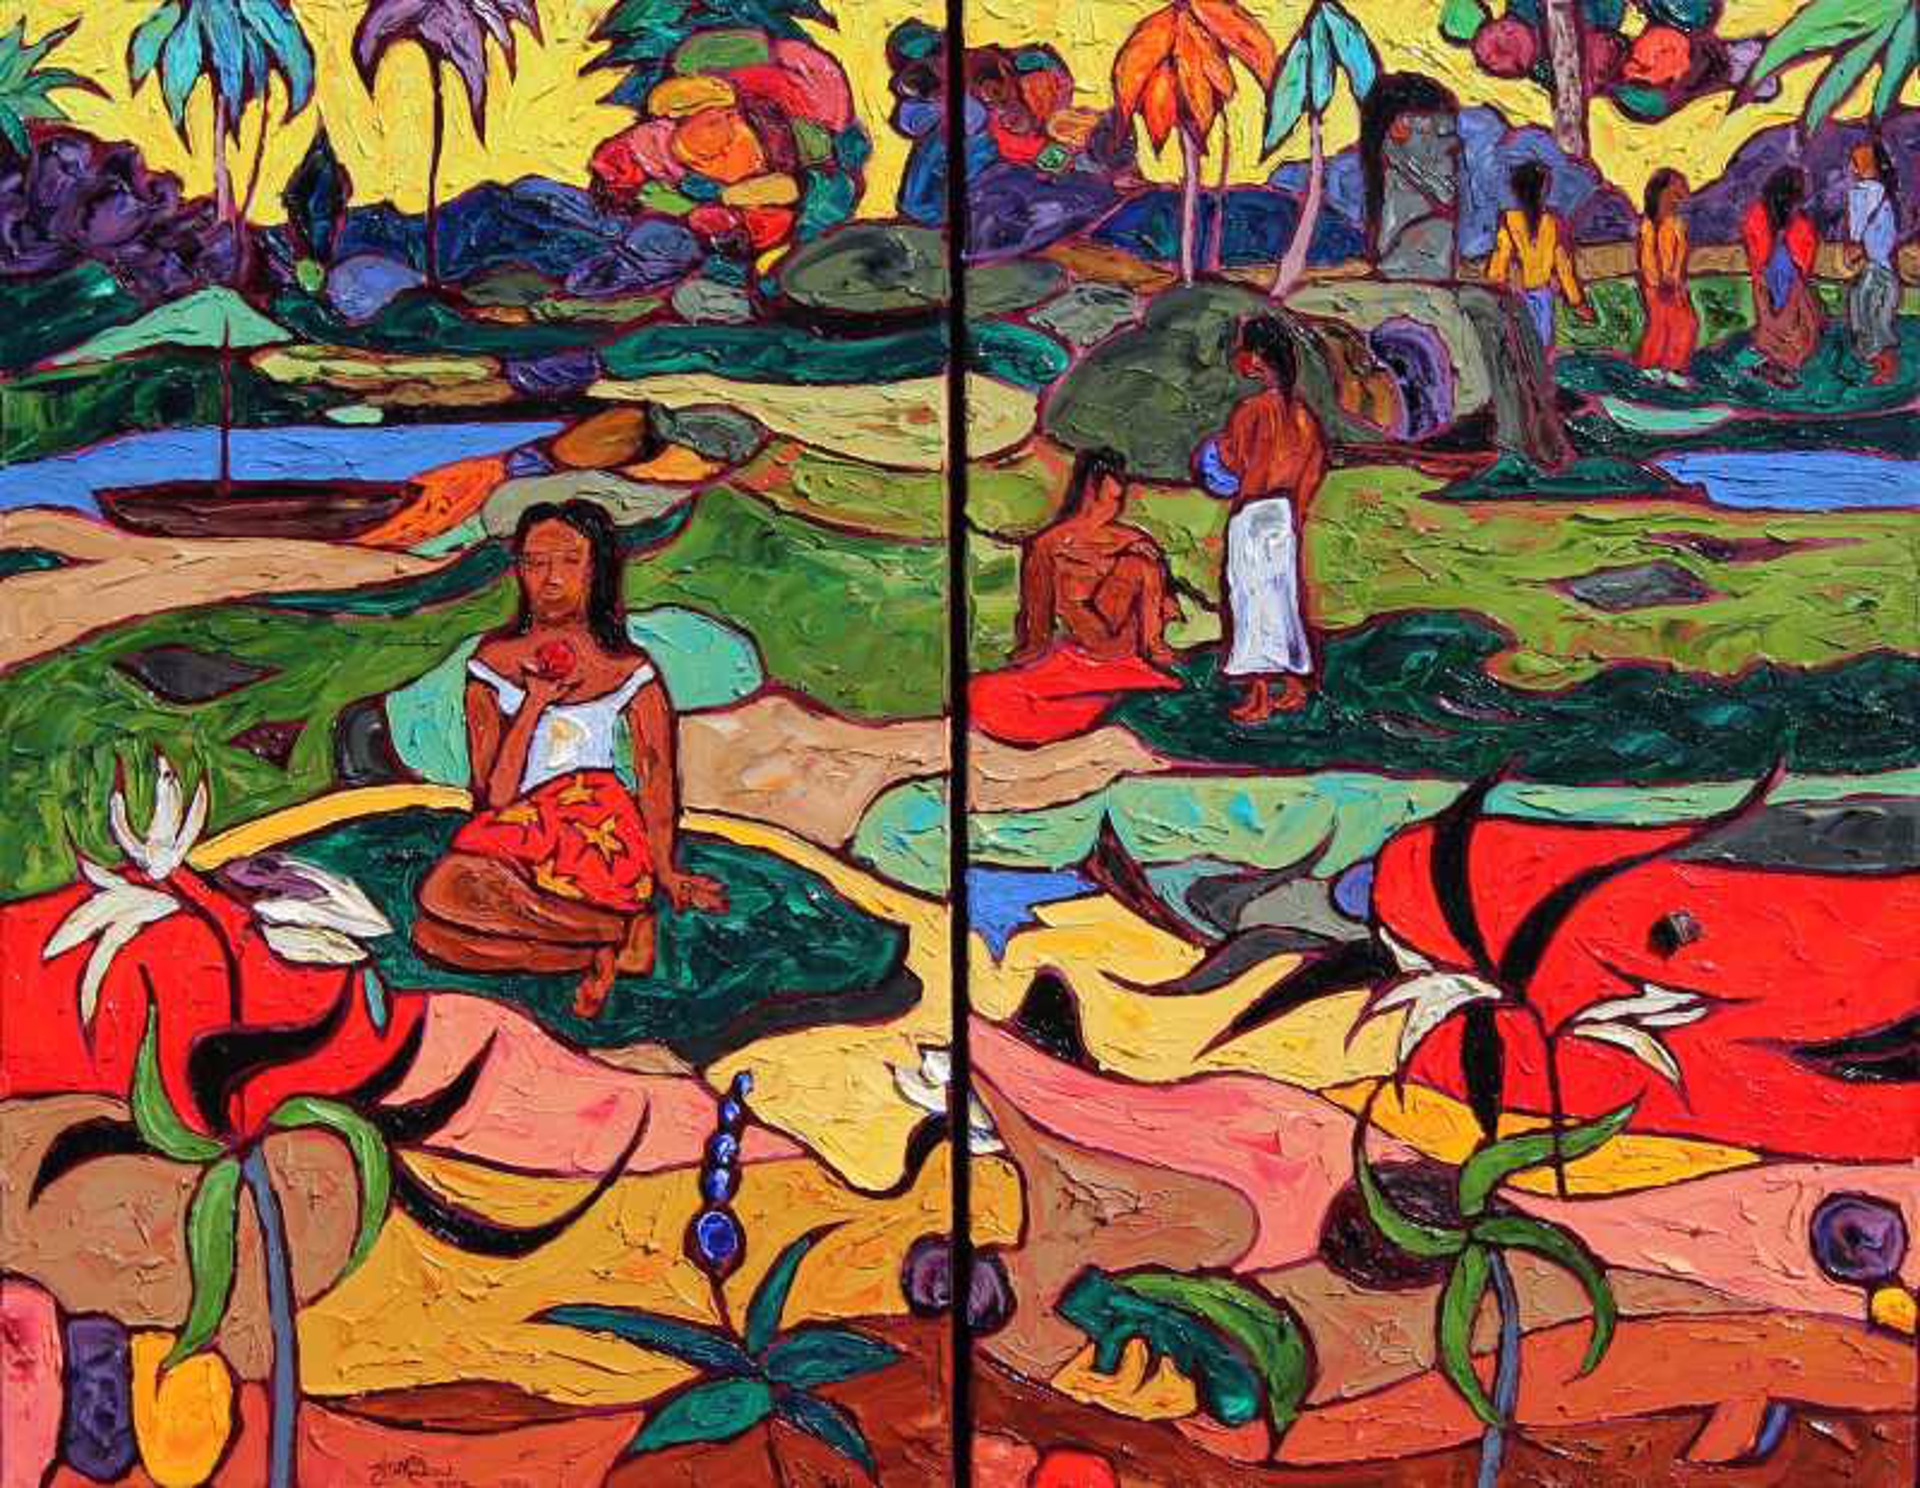 Sacred Spring after Gauguin by JD Miller